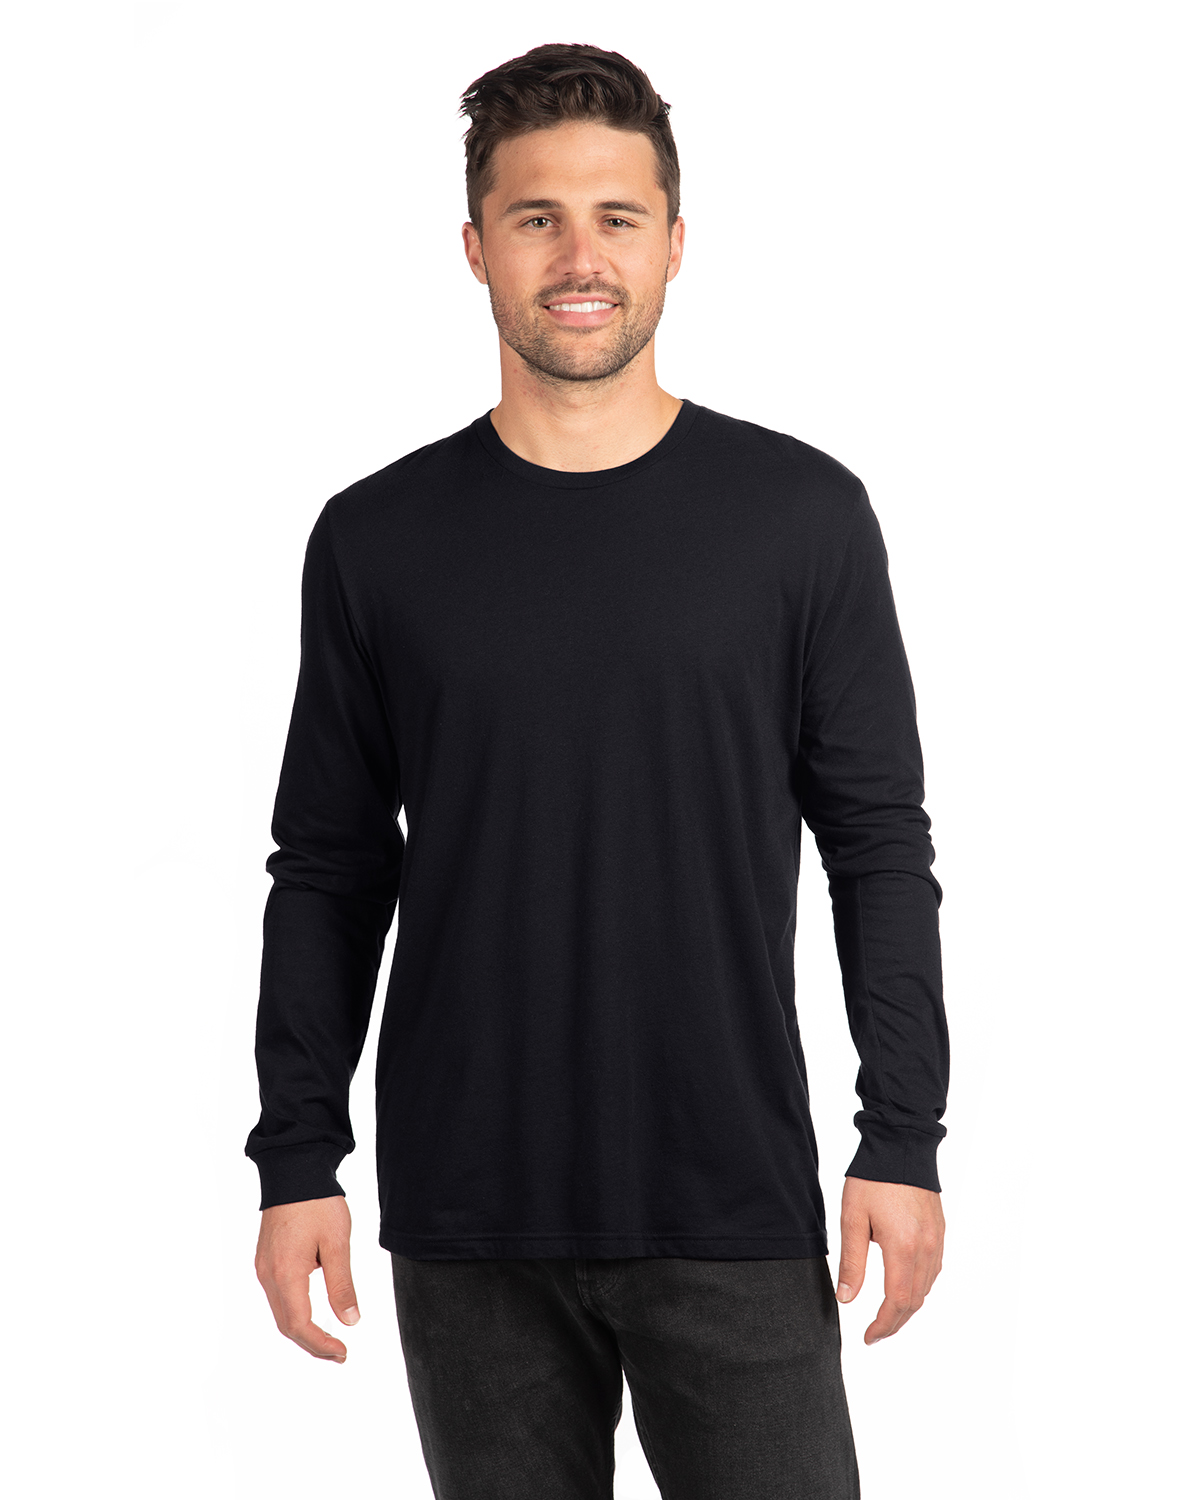 Next | Sleeve Level Cvc 6211 Shirts Adult Nl Shirt T Long Jiffy